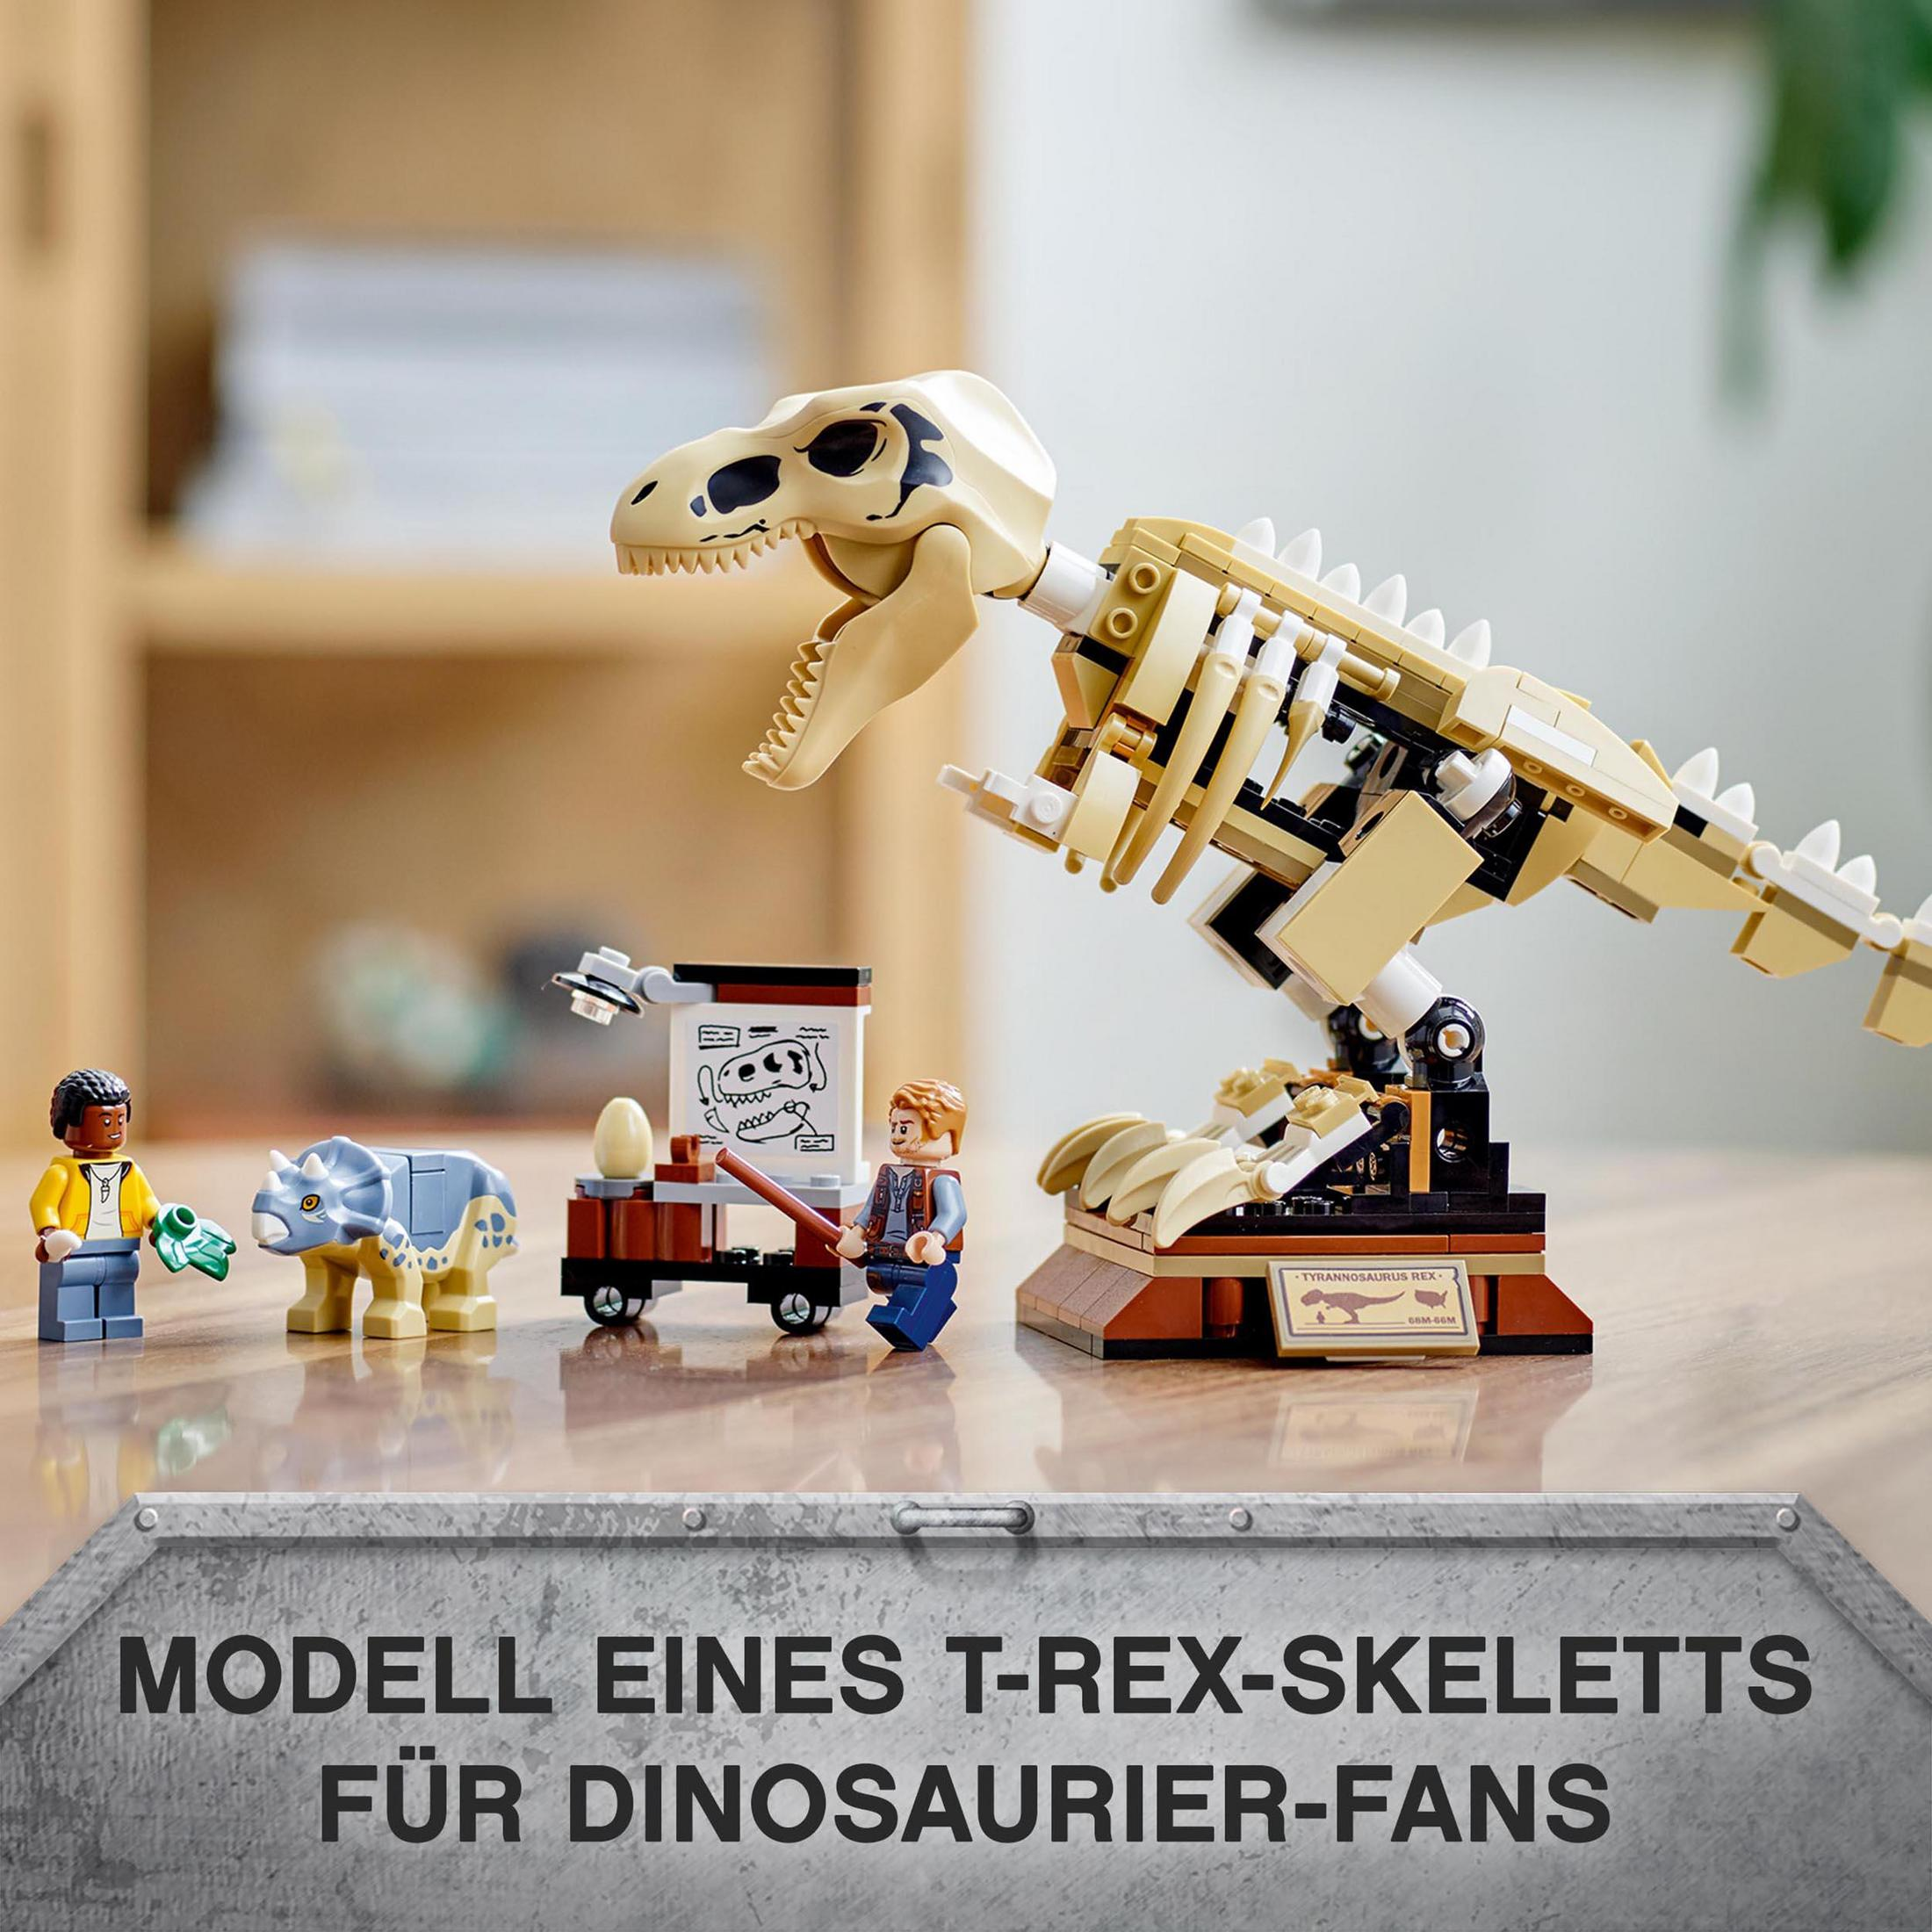 Bausatz T.REX-SKELETT DER 76940 LEGO FOSSILIENAUSSTELLUNG IN